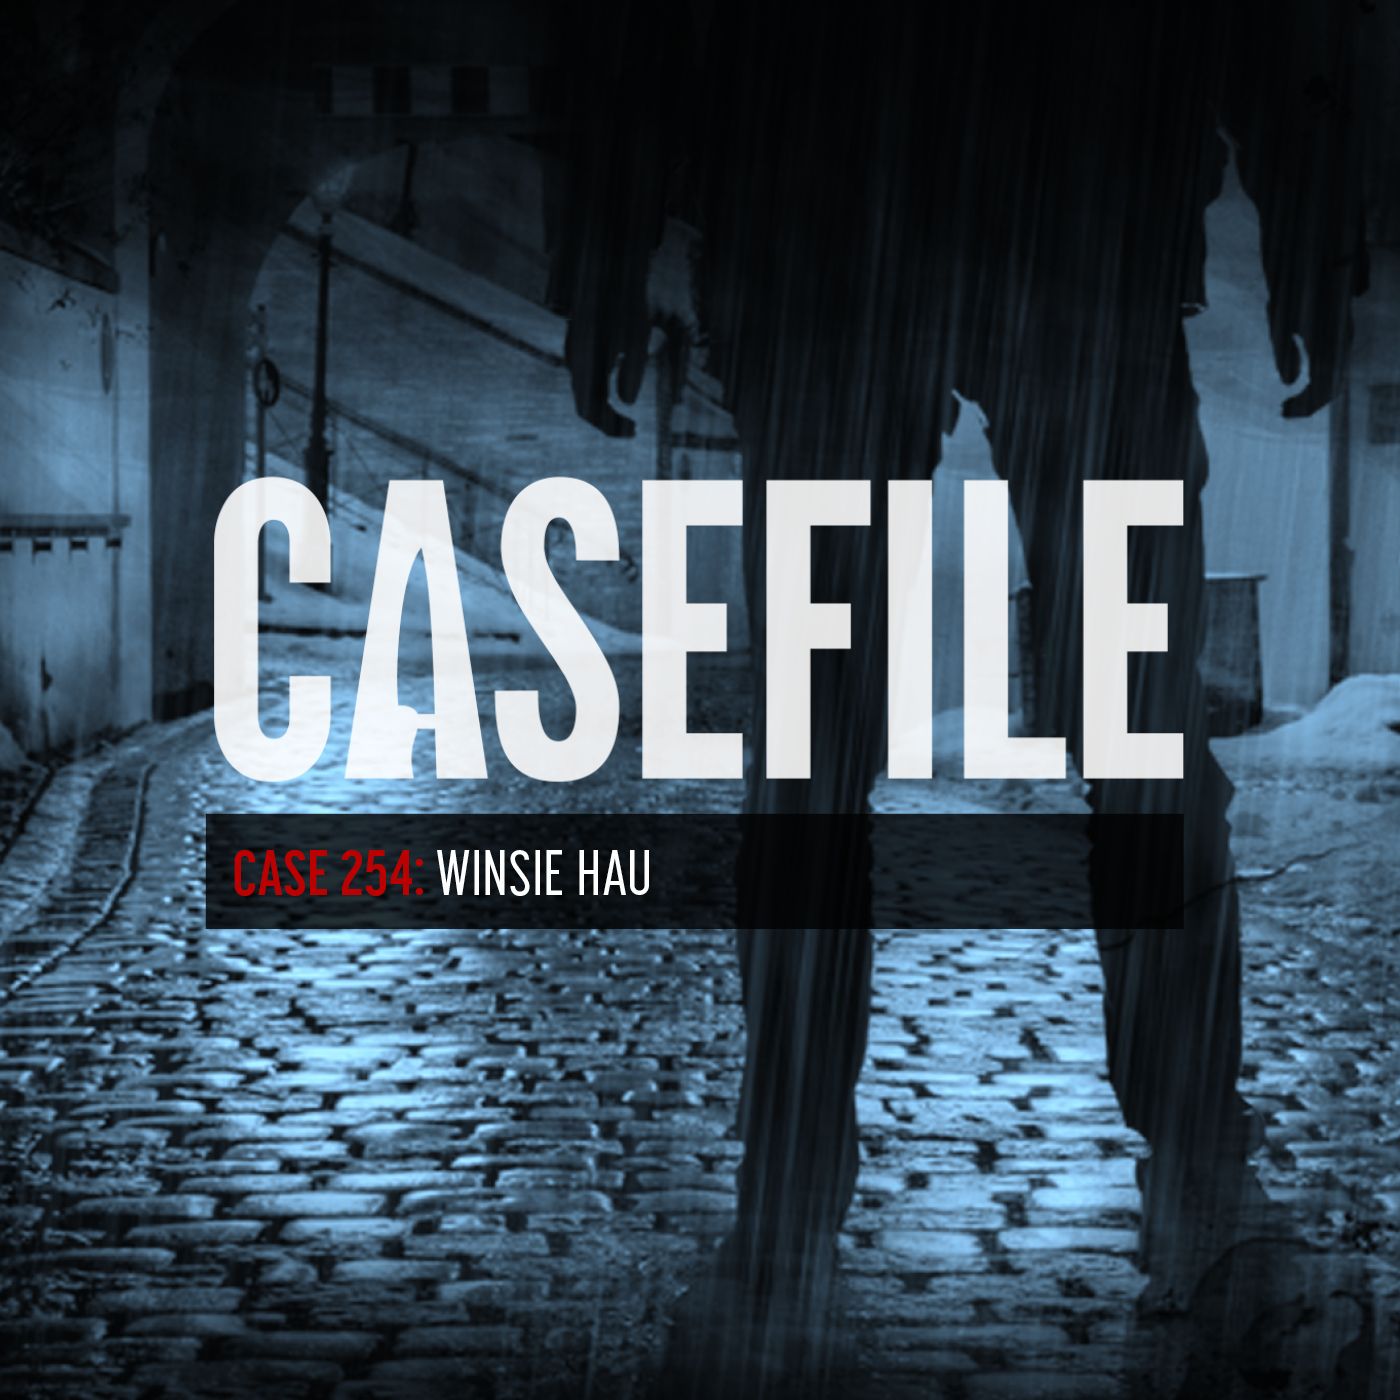 Case 254: Winsie Hau